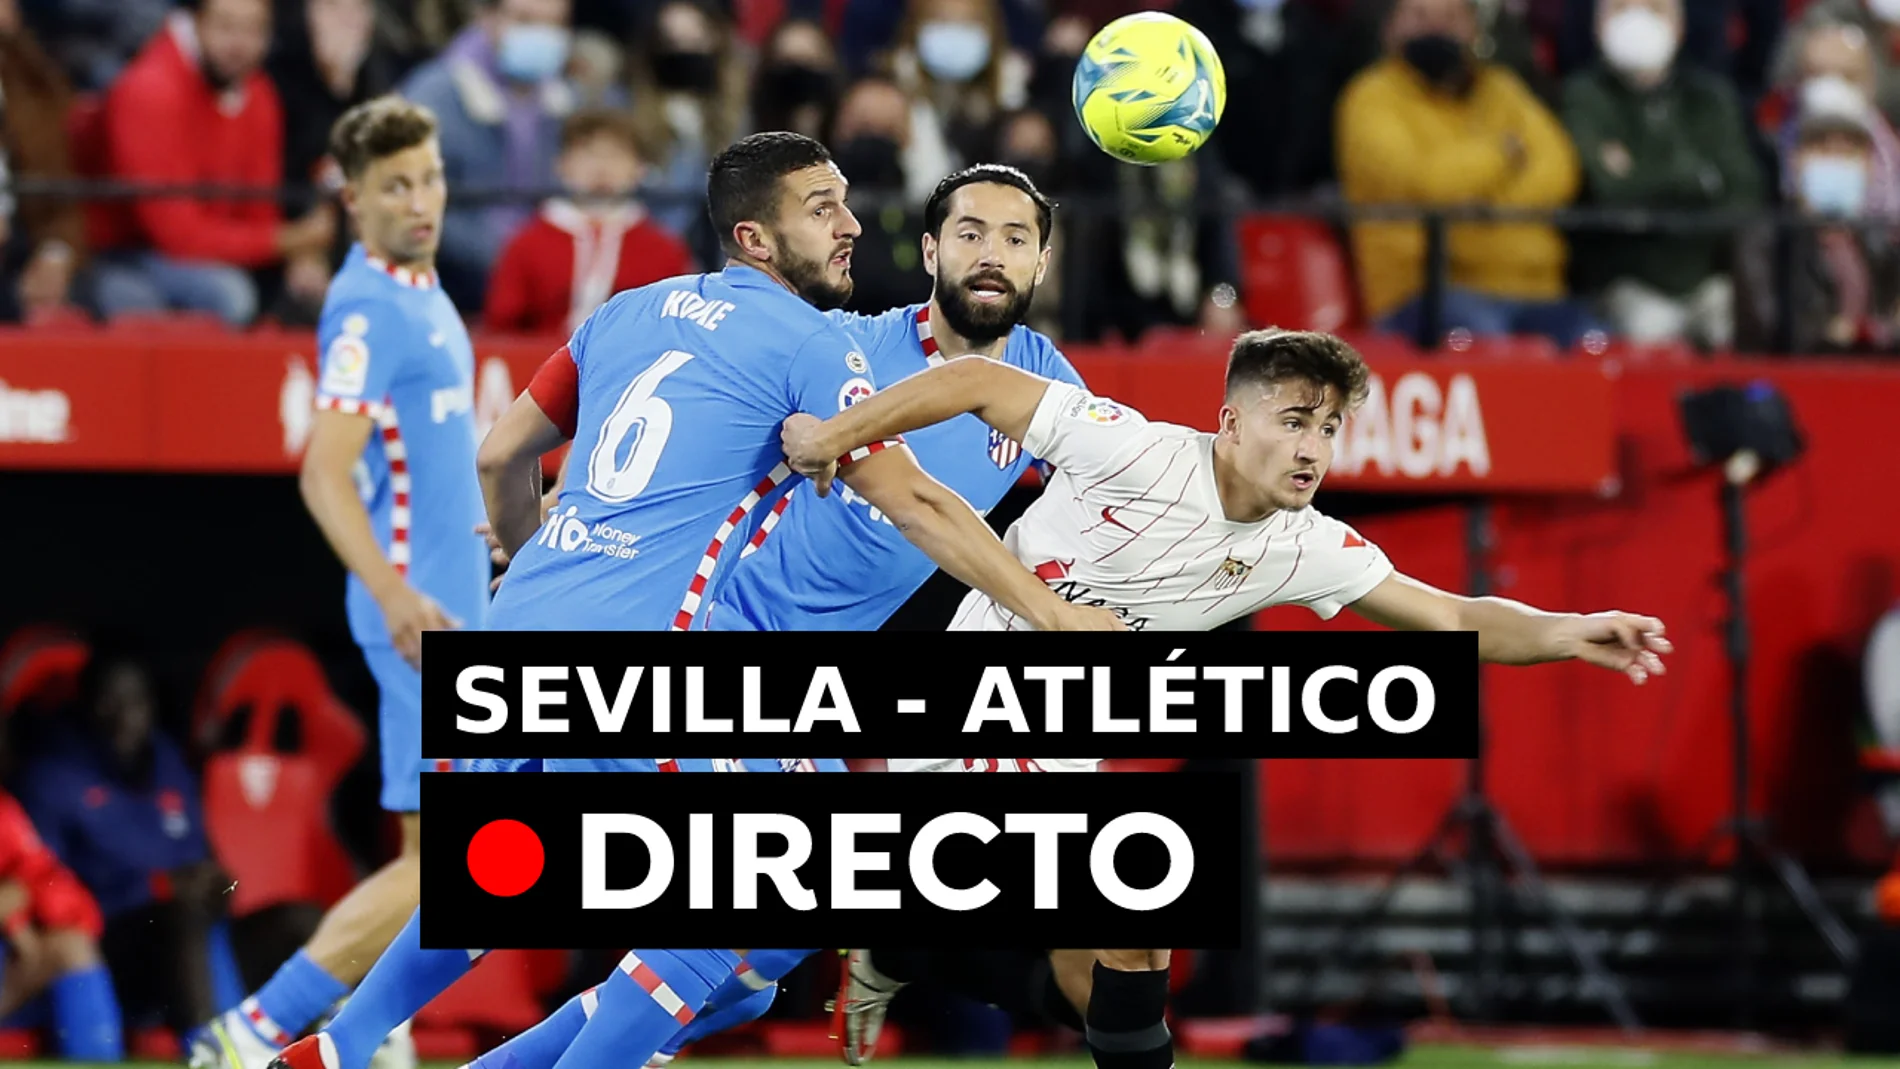 Resultado del Sevilla - Atlético de Madrid de hoy, en directo